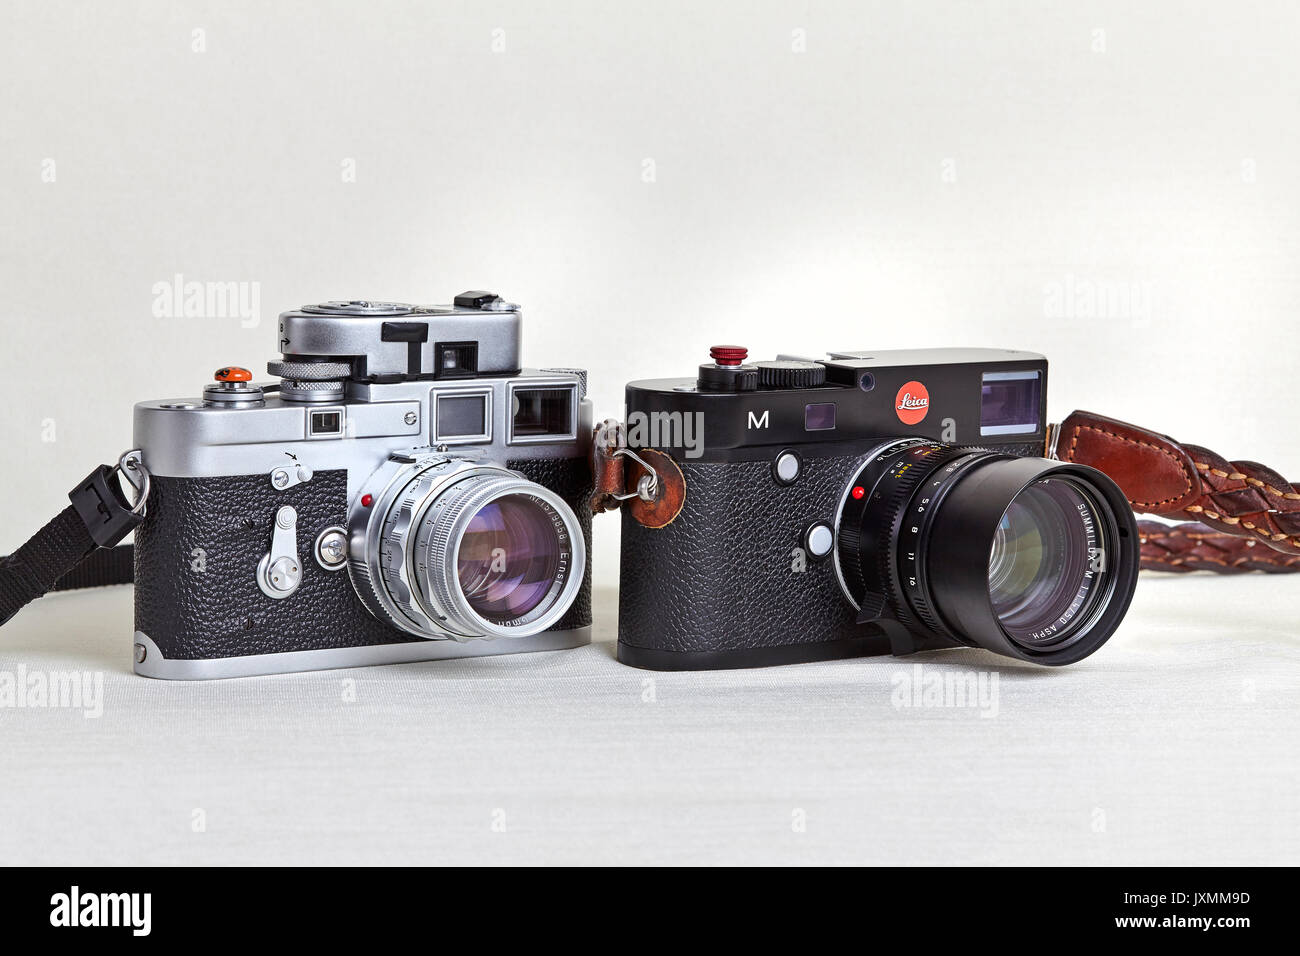 Appareil photo Leica. 1957 appareil photo Vintage Leica M3 et appareil photo numérique moderne 2017 Leica M240. Appareils photo Leica à travers les âges. Banque D'Images